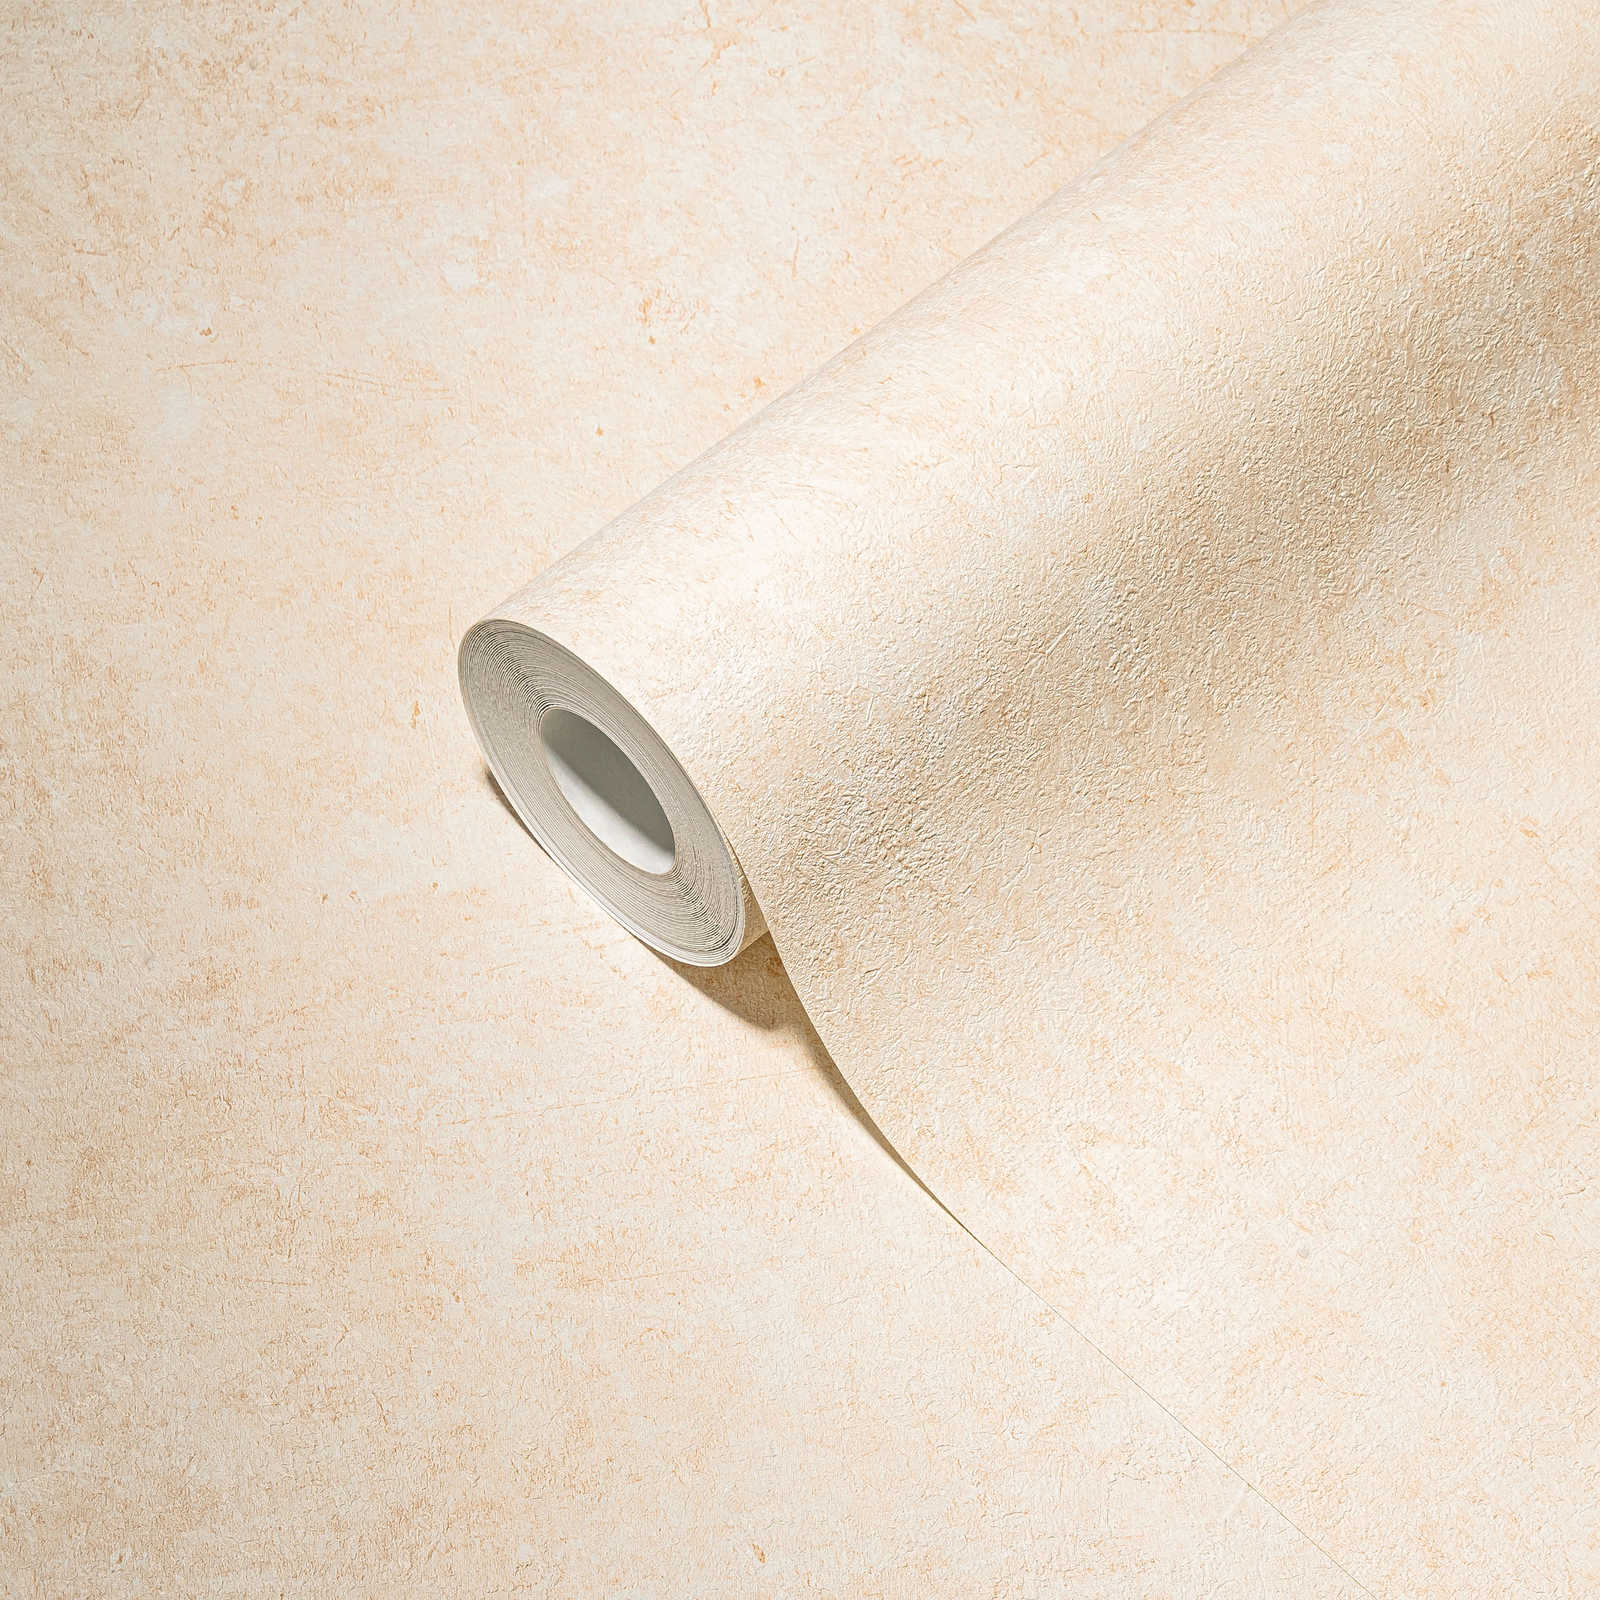             Textured wallpaper in plain subtle shades - cream, beige
        